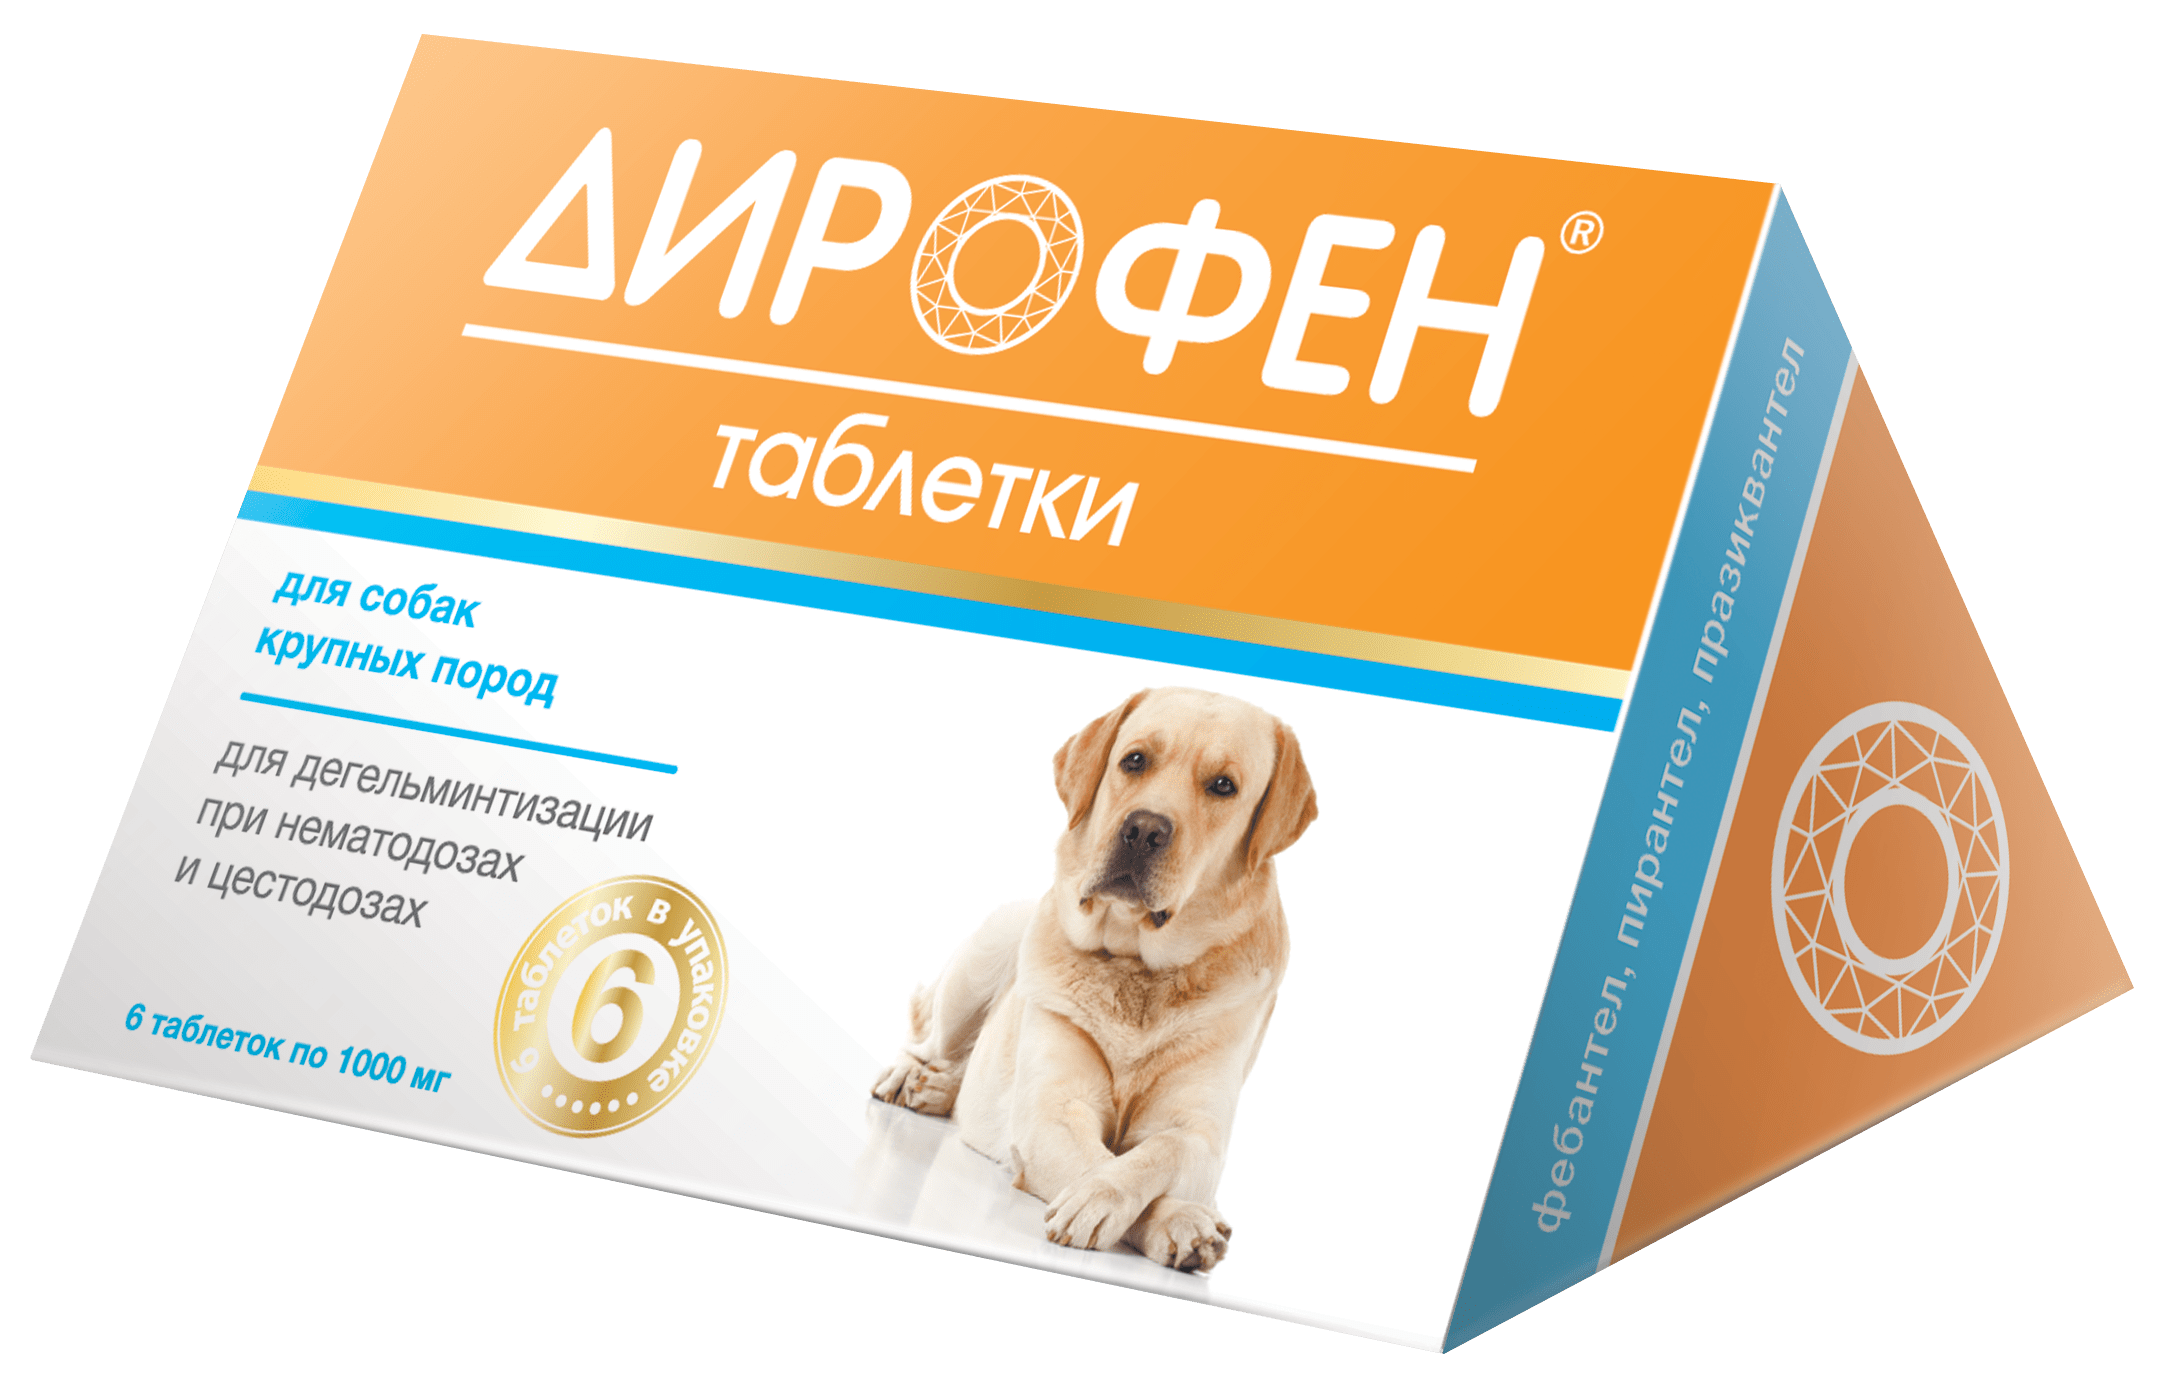 Дирофен таблетки для собак крупных пород